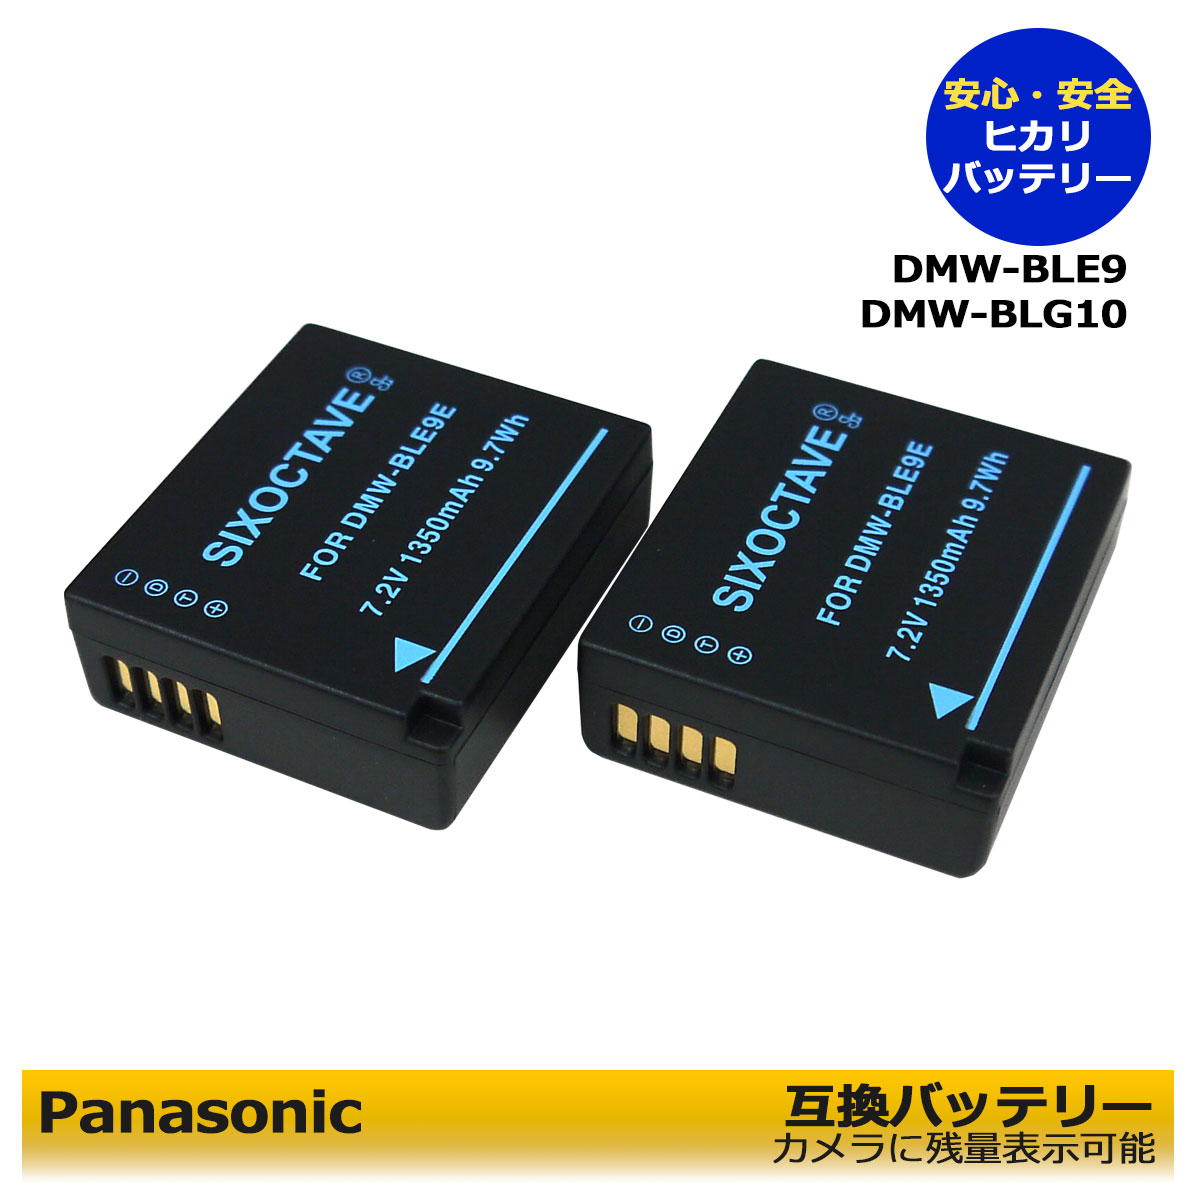 互換バッテリー 残量表示可能純正充電器で充電可能 Panasonic LEICA対応 DMW-BLE9 BP-DC15-U 2点セット DMC-GF5XT DMC-GF5XW DMC-GF6 DMC-GF6T DMC-GF6K DMC-GF6R DMC-S6K 一眼レフカメラ対応 最大55%OFFクーポン DMC-GF6X カメラアクセサリー 【一部予約販売中】 DMC-S6 DMC-GF6W